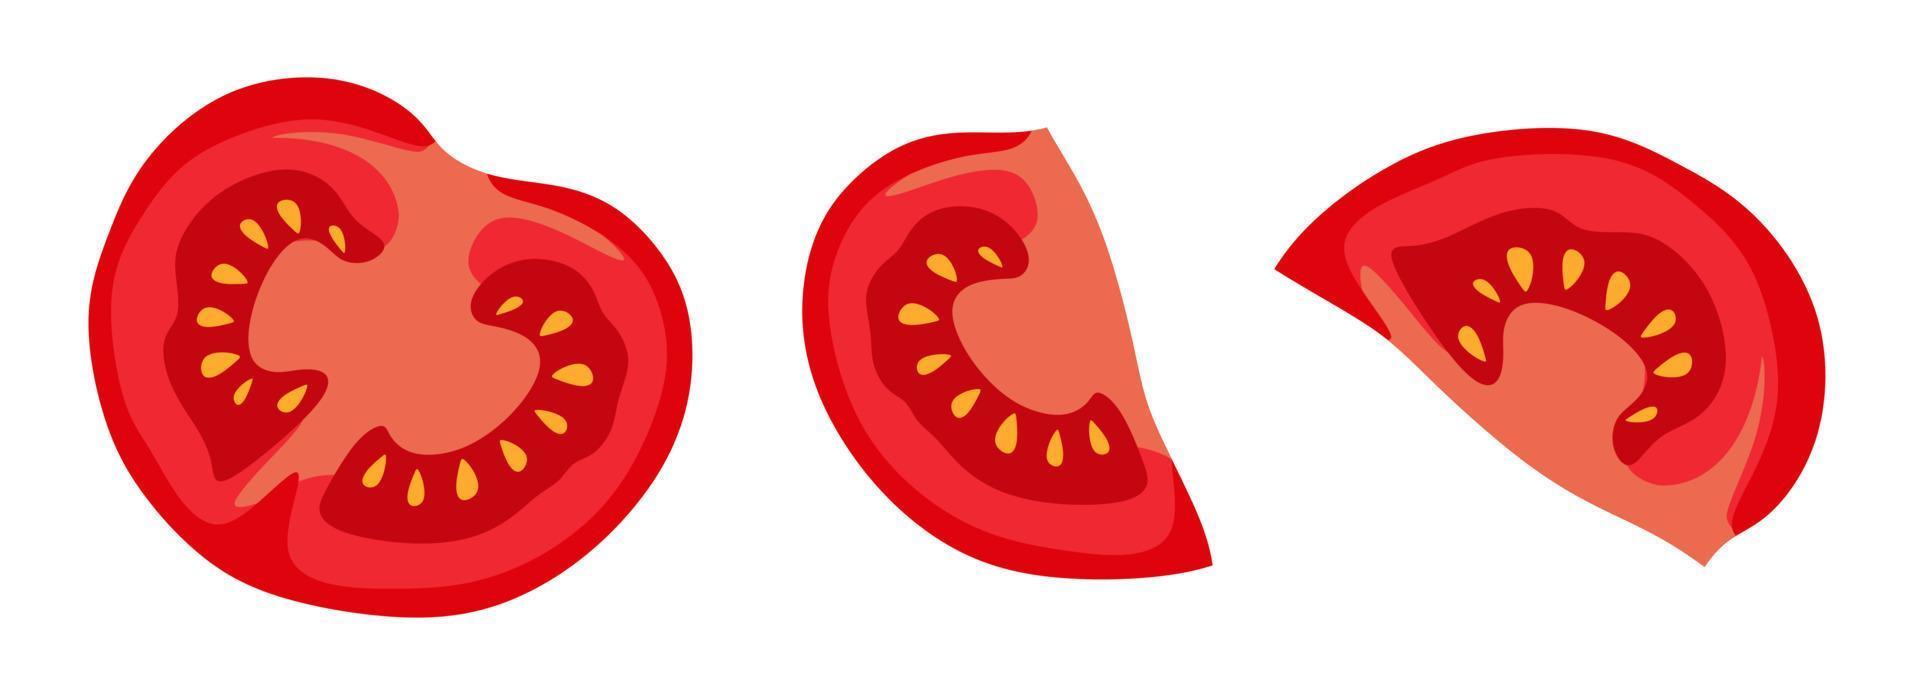 fatias de tomate na seção de vários ângulos. ilustração vetorial. um conceito para adesivos, cartazes, cartões postais, sites e aplicativos móveis. vetor